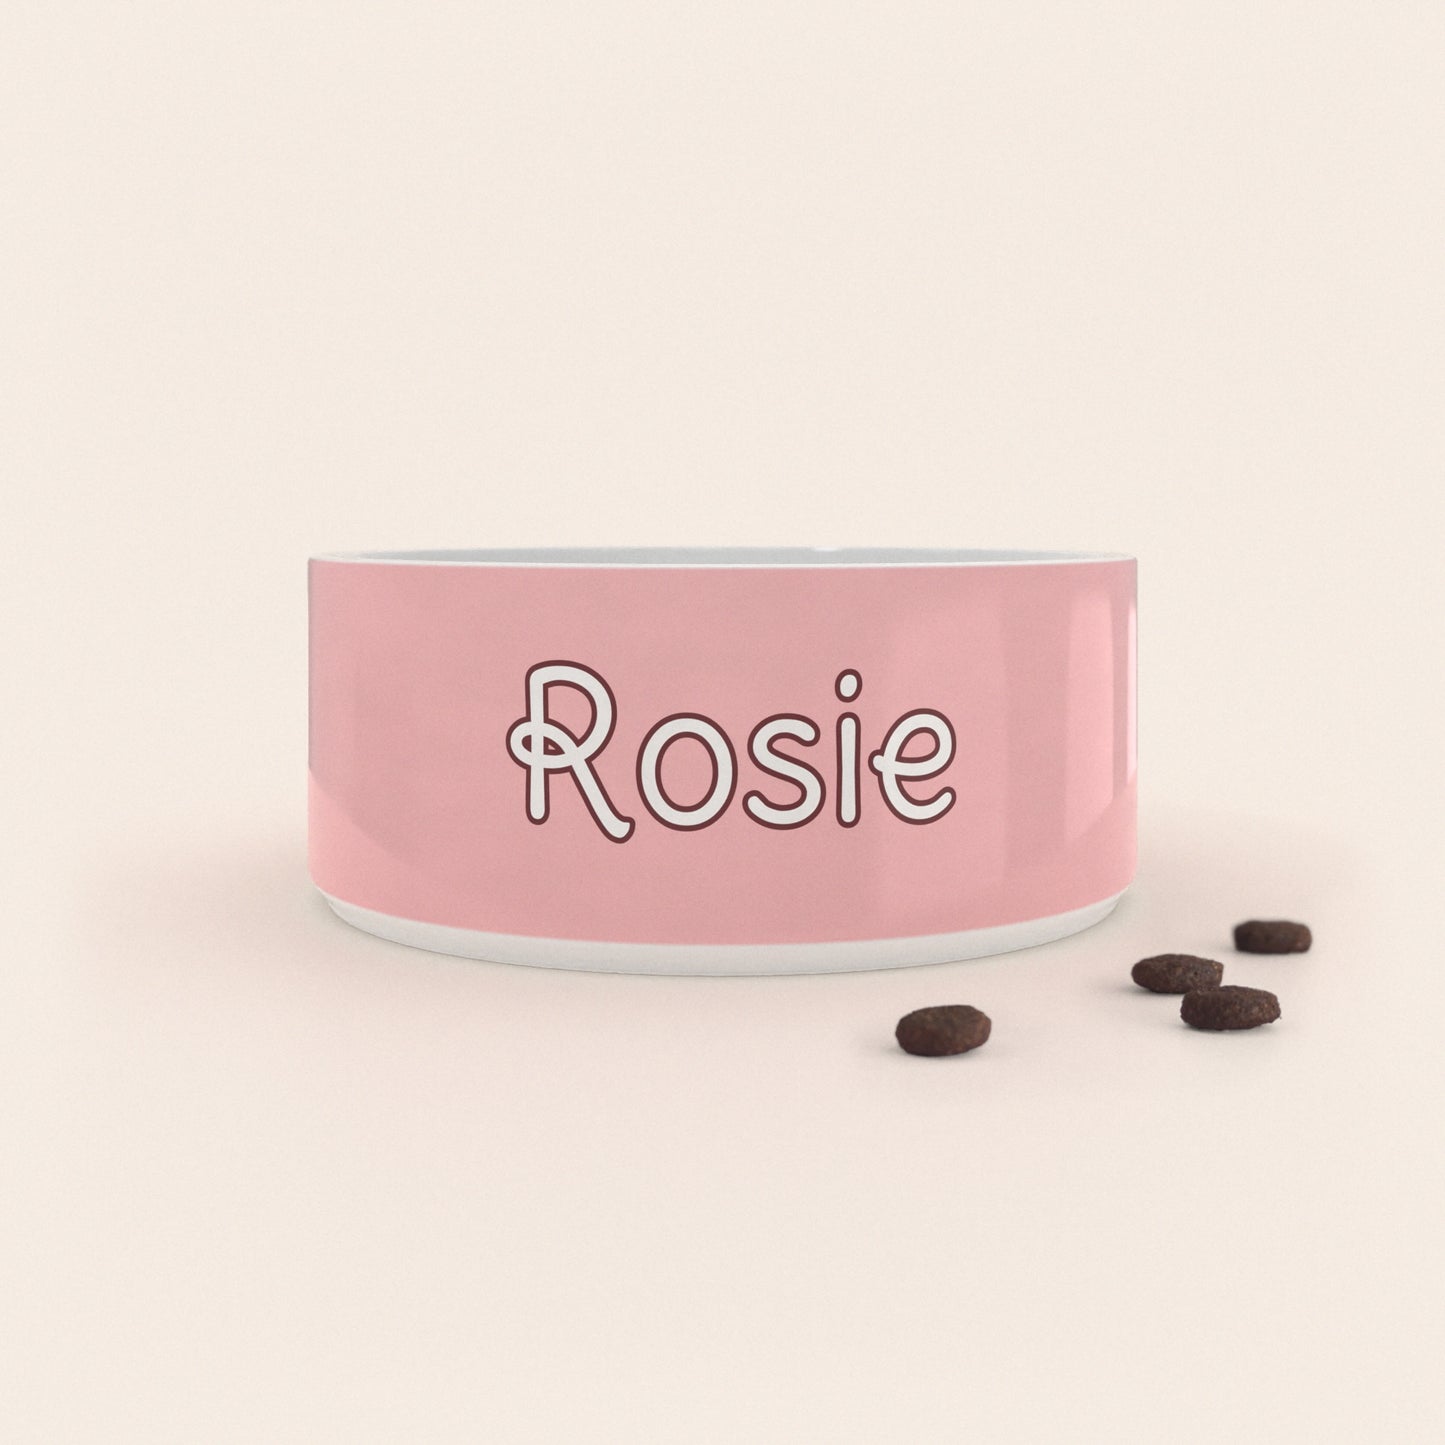 Gamelle pour chien au motif Rose Pastel personnalisés avec le nom Rosie, accompagné de croquettes sur fond neutre.